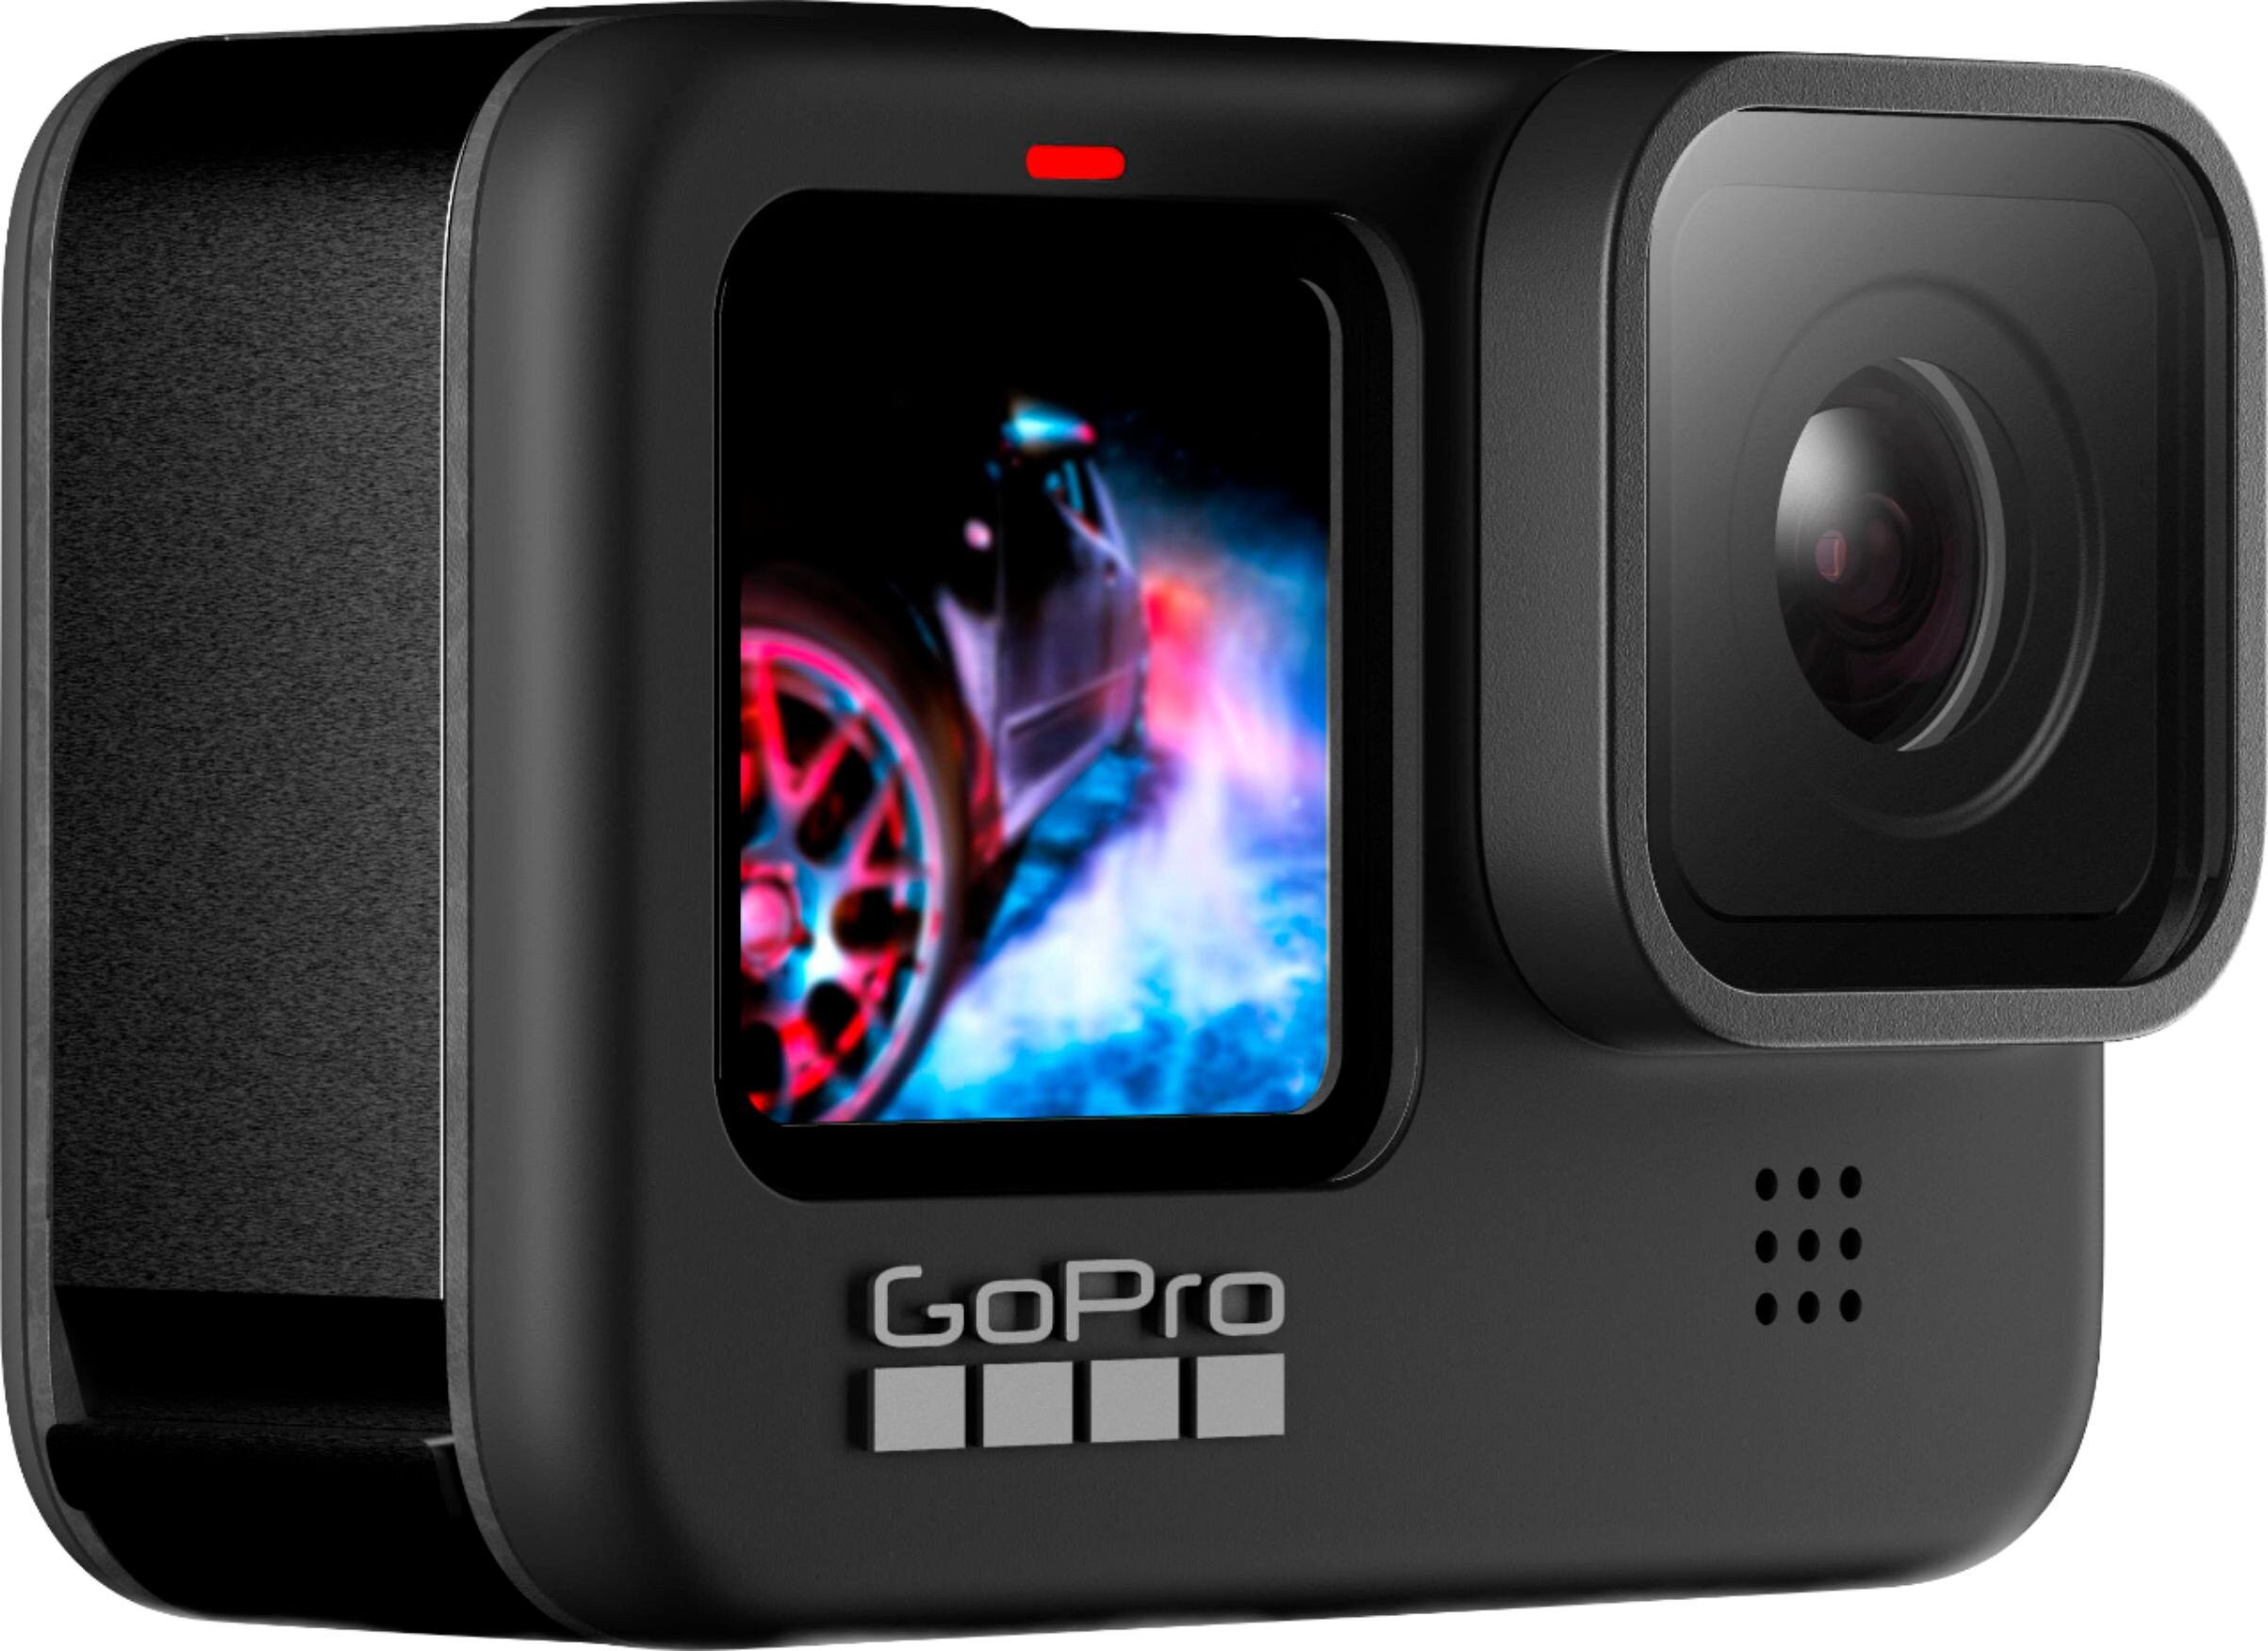 Buy GoPro HERO9 Black 5K 20MP Waterproof Action Camera online in Pakistan - Tejar.pk